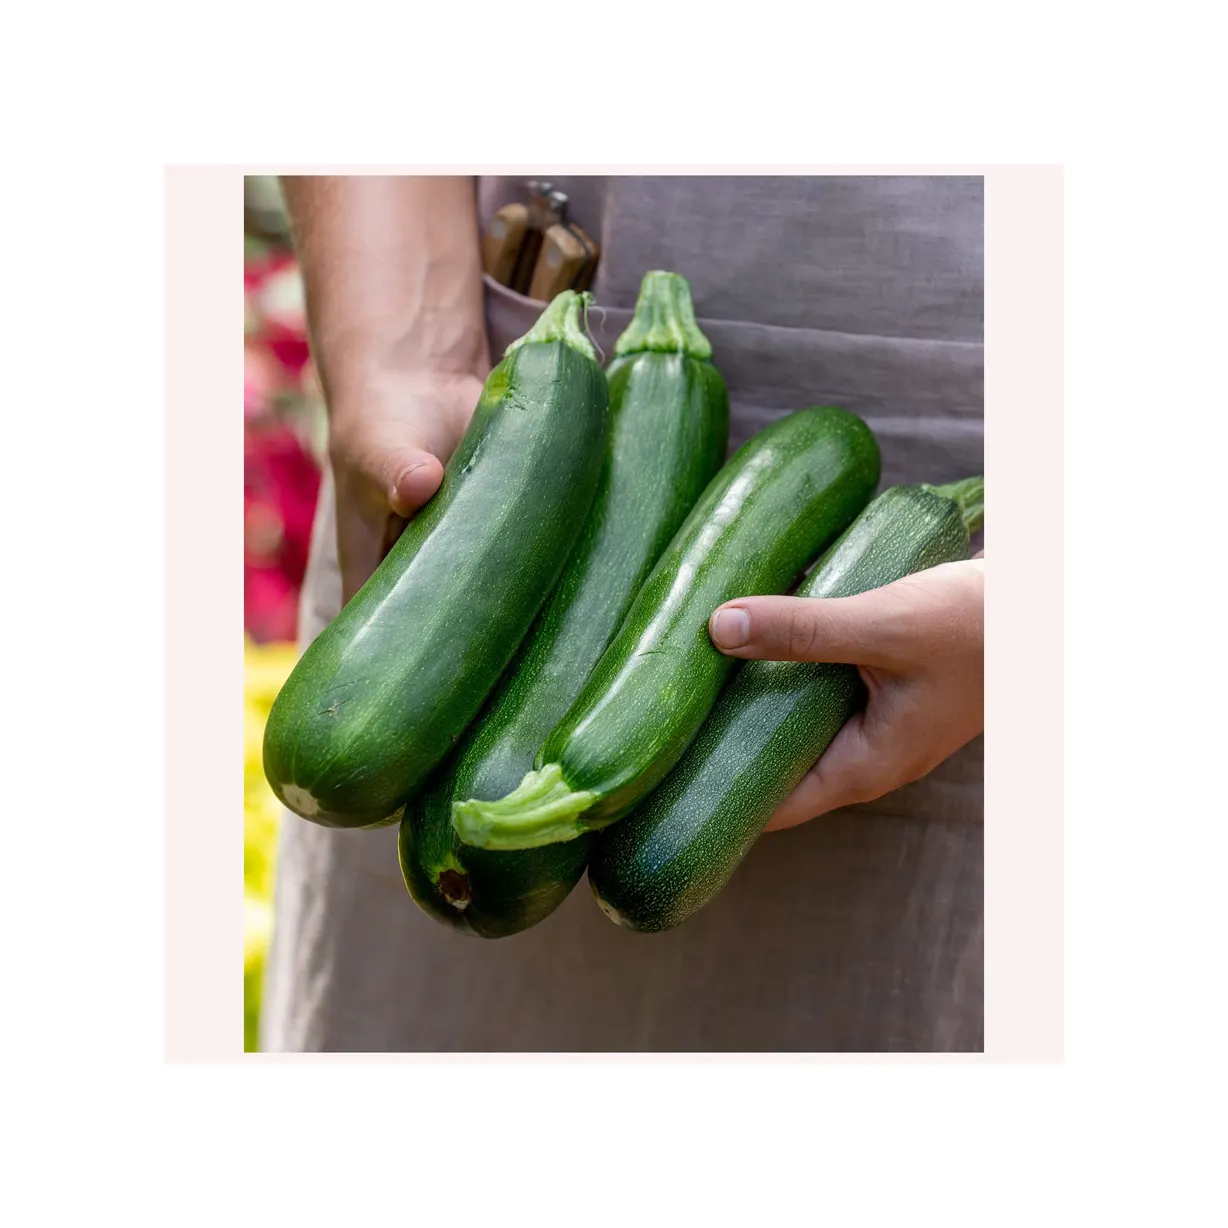 100% natürlich gewachsene Bio-Frisch gurke Frisches Gemüse Zucchini-Kürbis für den Lebensmittels ervice für den Export